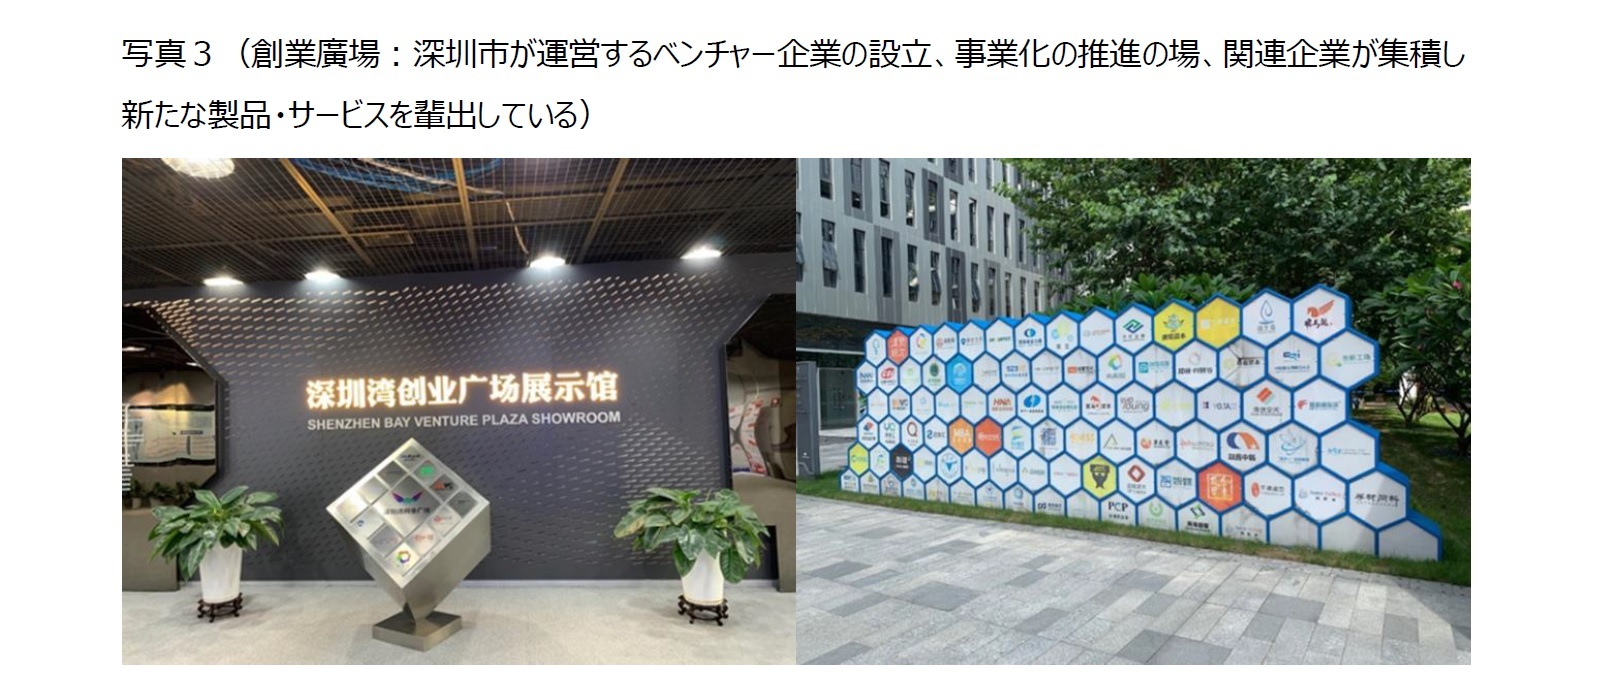 写真３（創業廣場：深圳市が運営するベンチャー企業の設立、事業化の推進の場、関連企業が集積し新たな製品・サービスを輩出している）